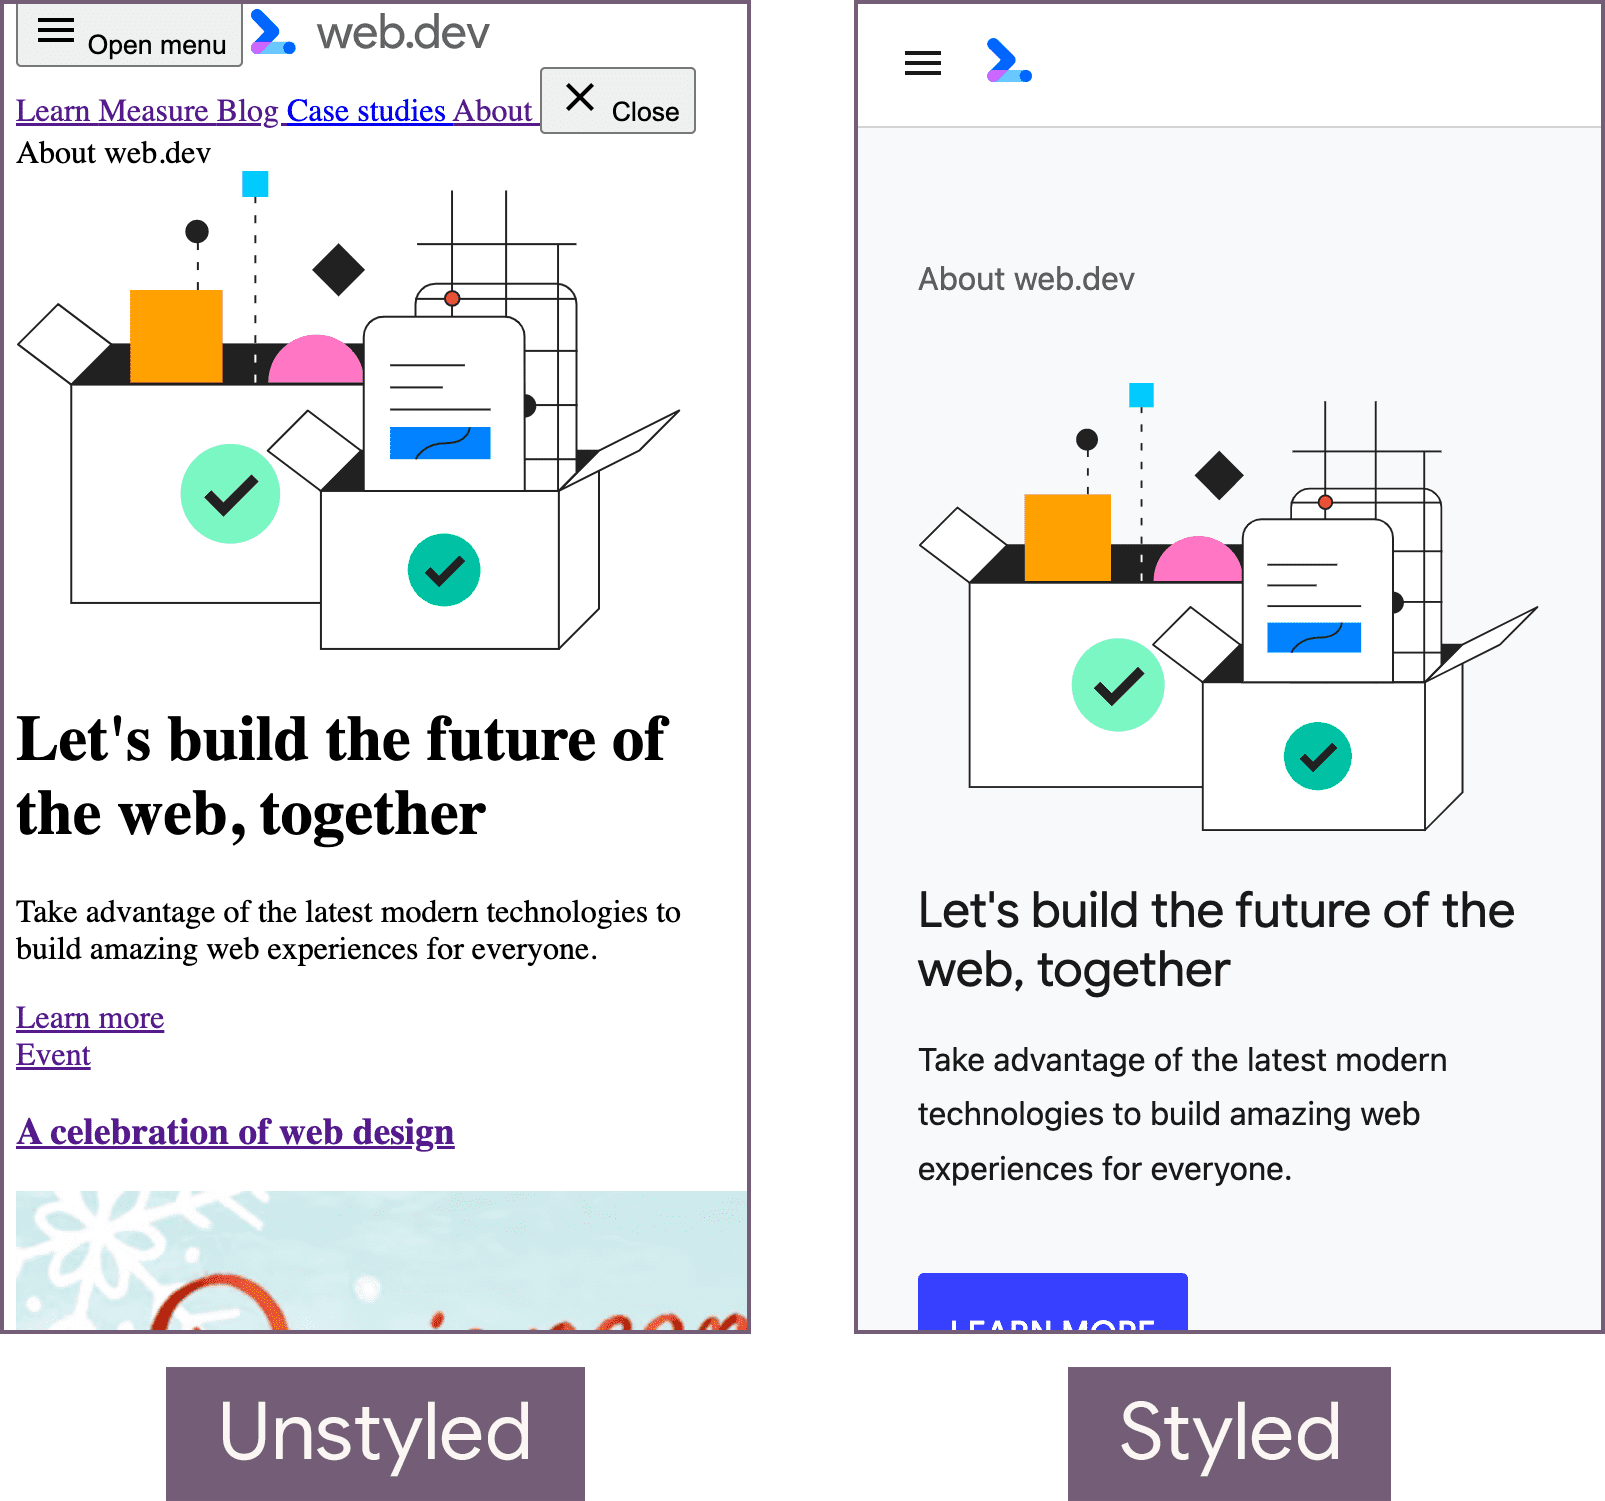 Домашняя страница web.dev в нестилизованном состоянии (слева) и стилизованном состоянии (справа).